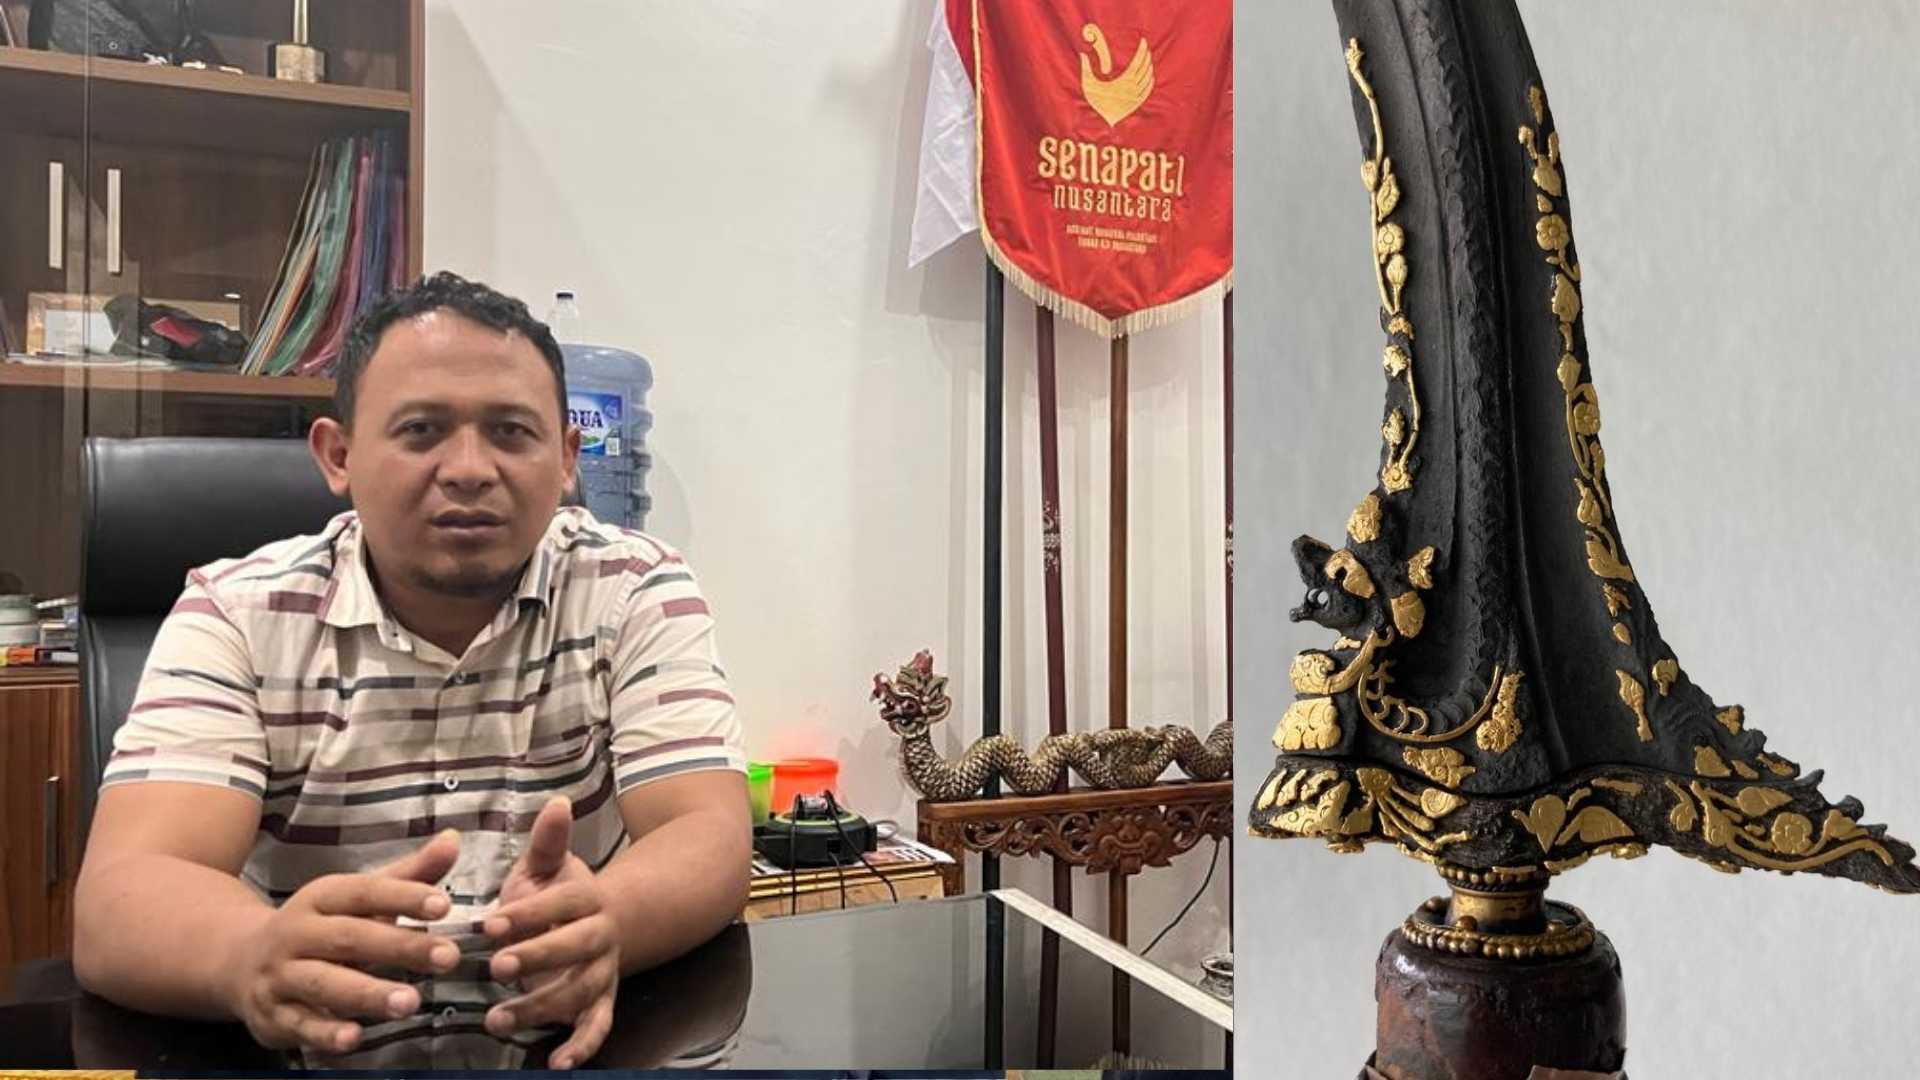 Mahakarya Keris Naga Sasra Majapahit yang Ratusan Tahun Hilang Diklaim Akan Muncul pada Musyawarah Agung Senapati Nusantara di Yogya 17 September 2022